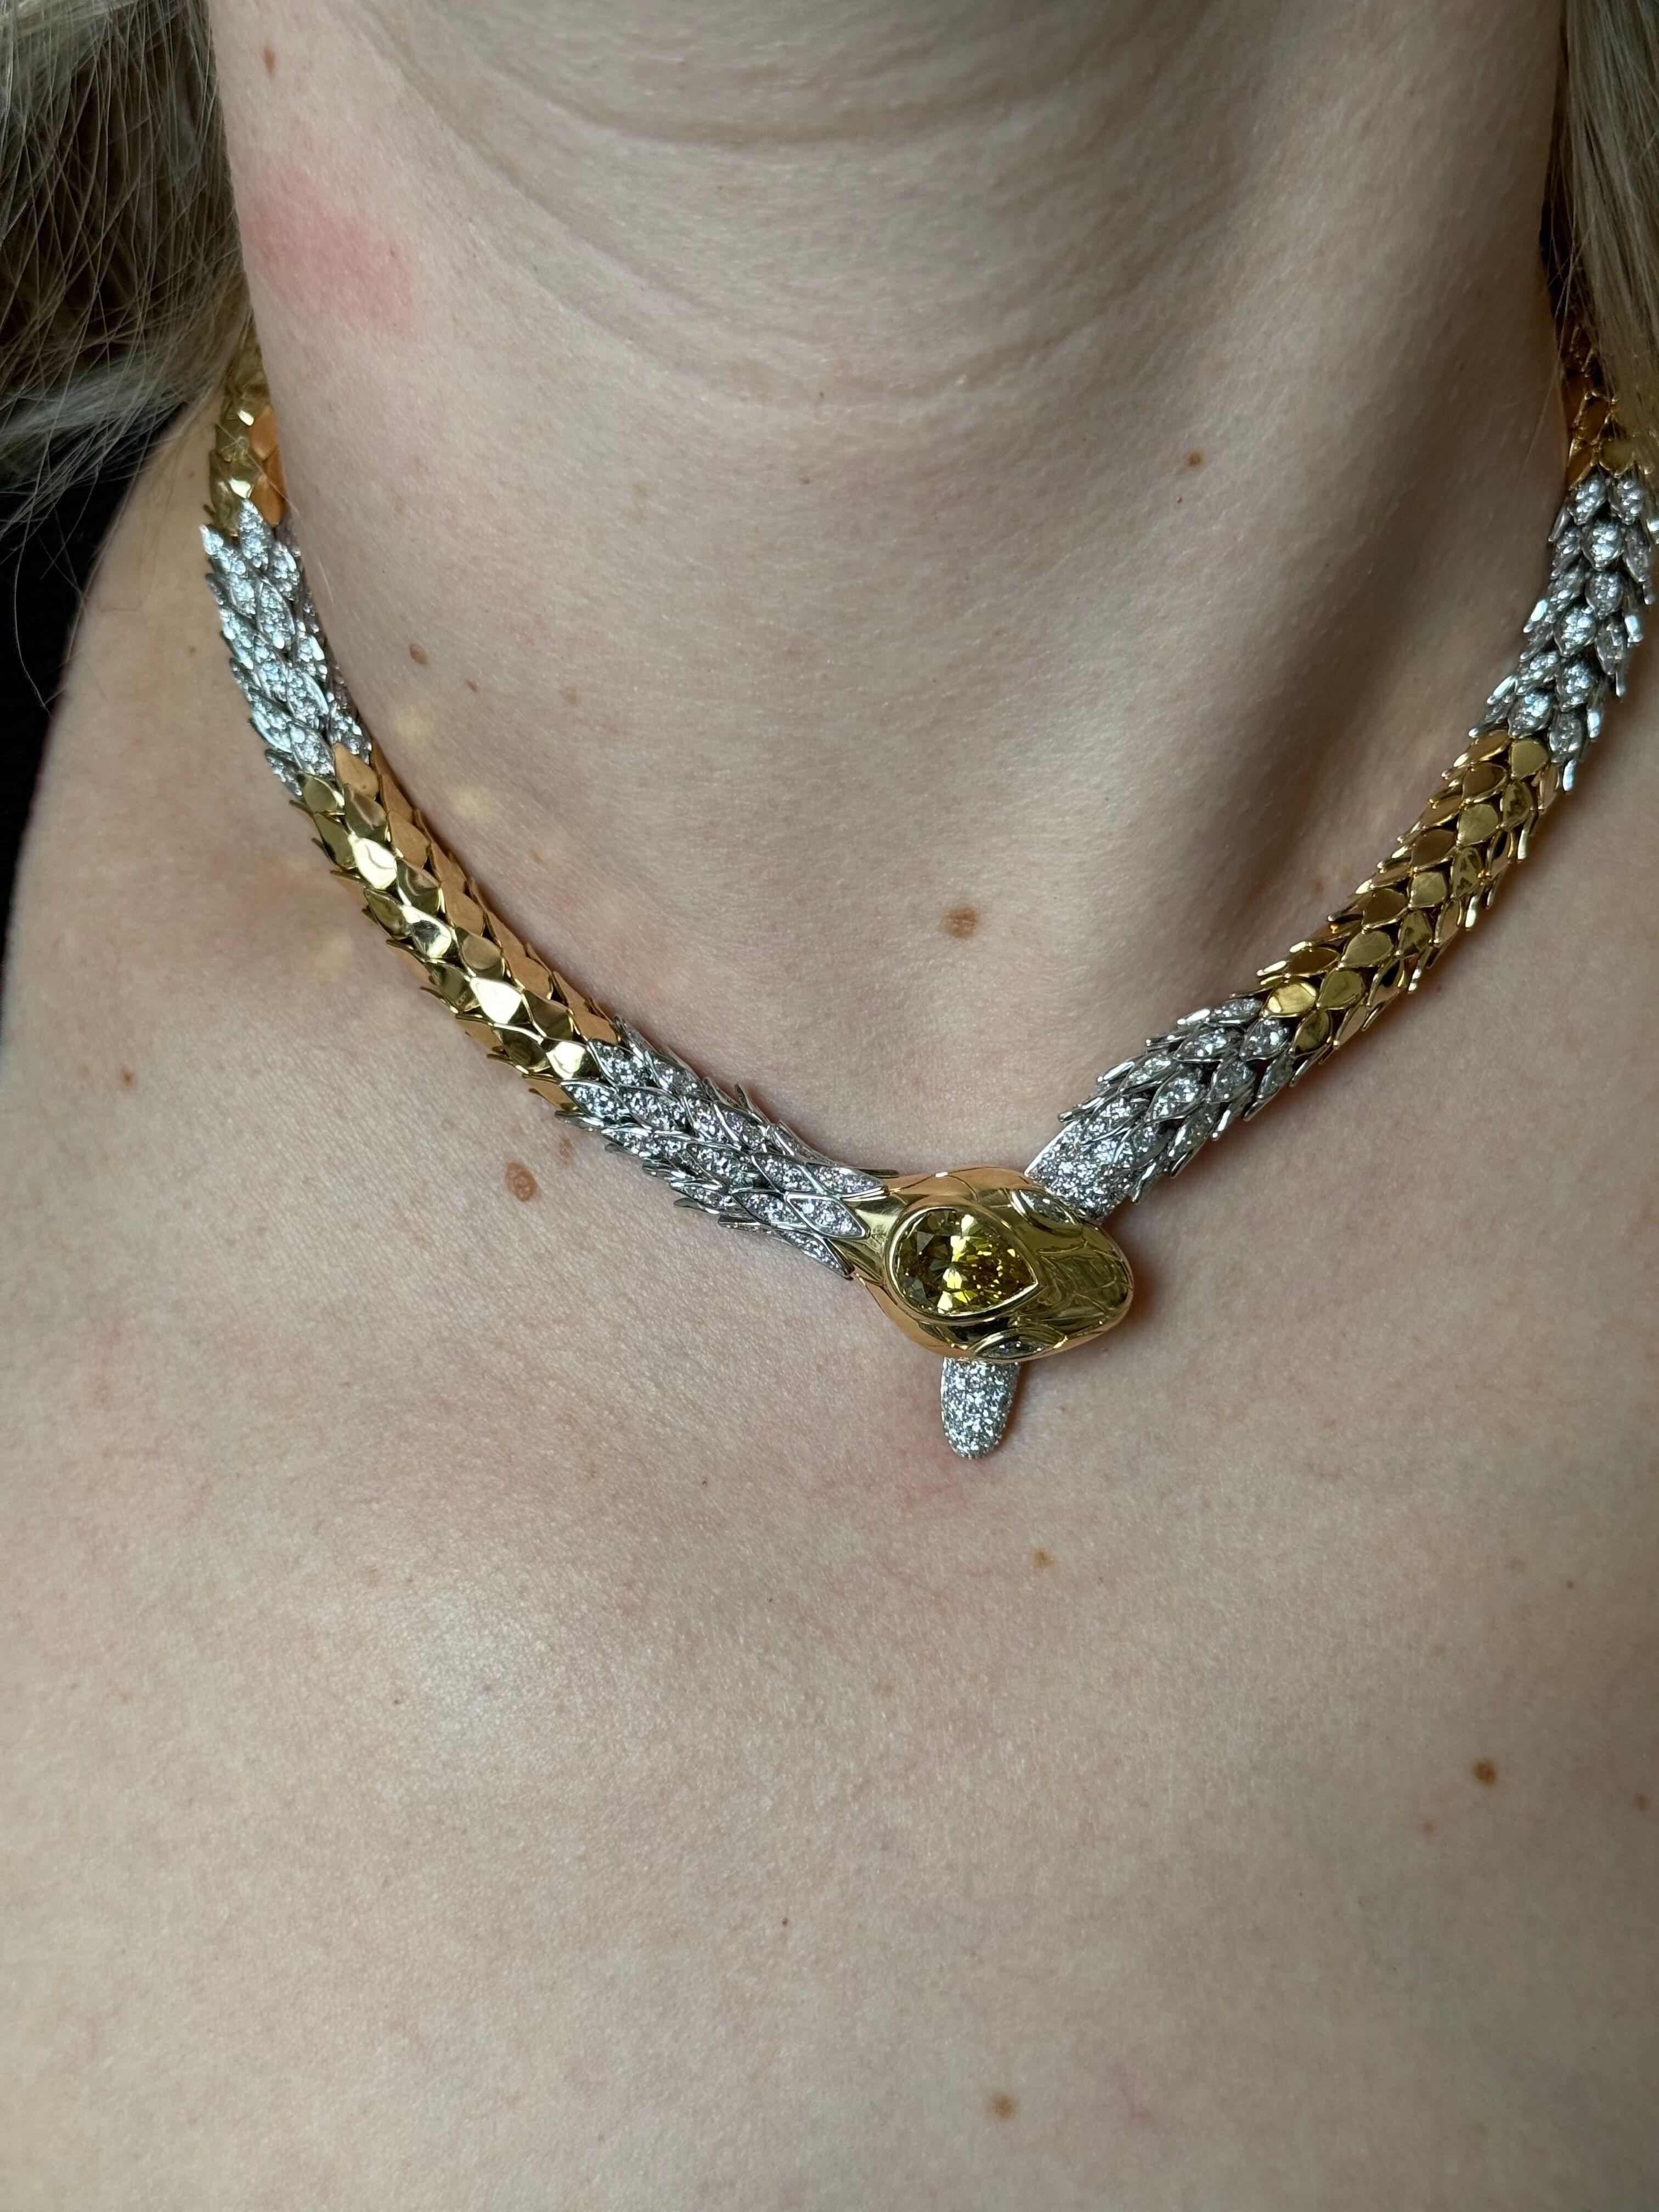 Impressionnant collier serpent en or 18 carats et platine par Faraone, comprenant environ 6,00ctw G/VS diamants sur le collier, et un diamant poire cognac de fantaisie au centre - environ 3,60ct VS-Si1. Le collier mesure 17